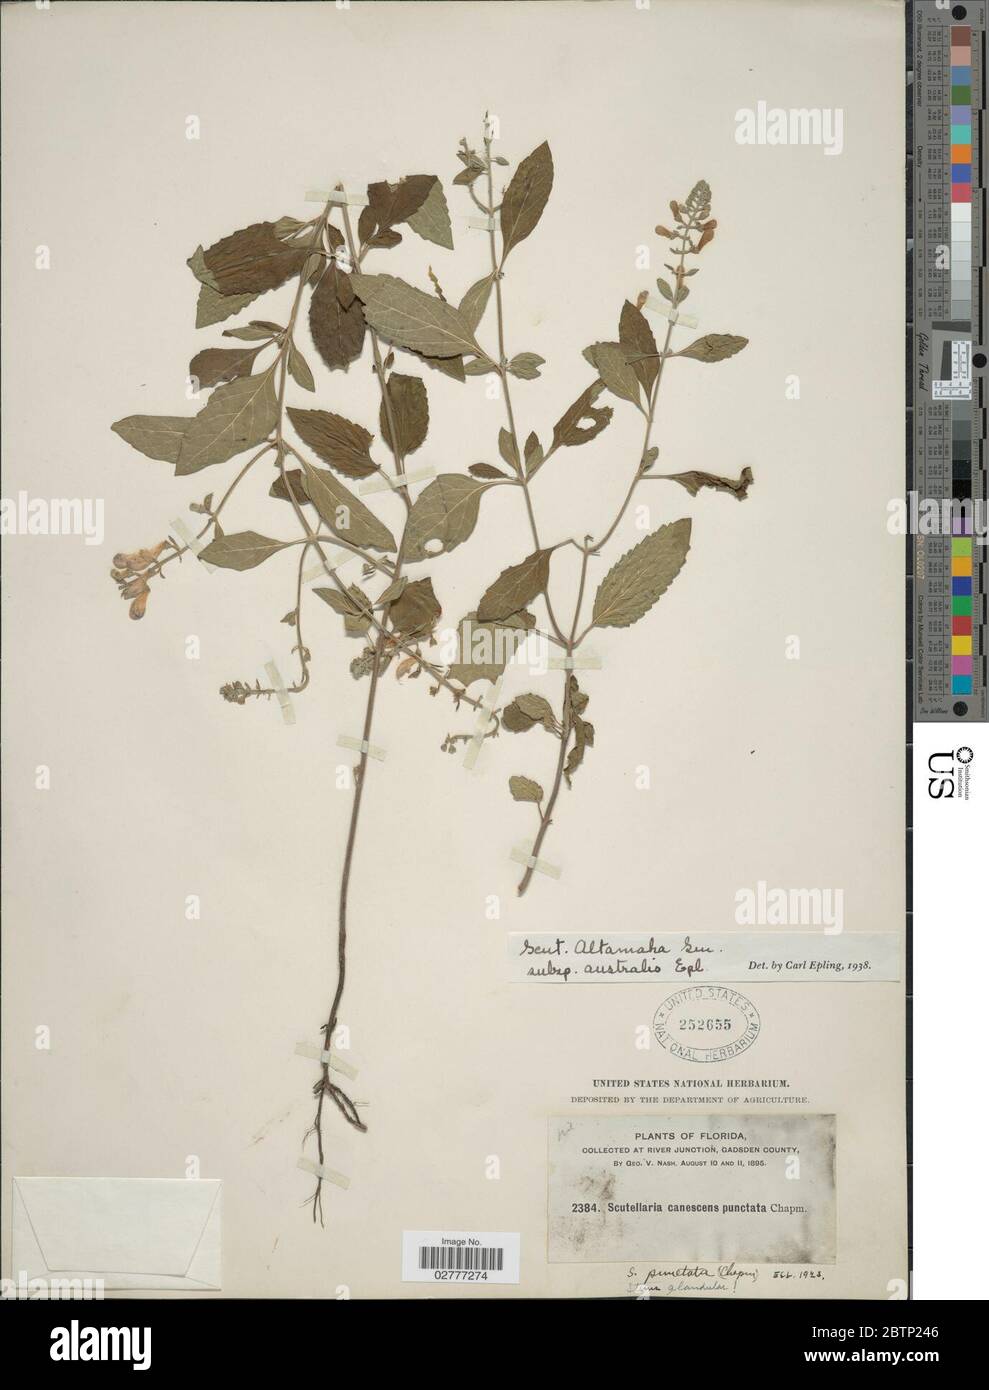 Scutellaria altamaha subsp australis Epling. Stock Photo